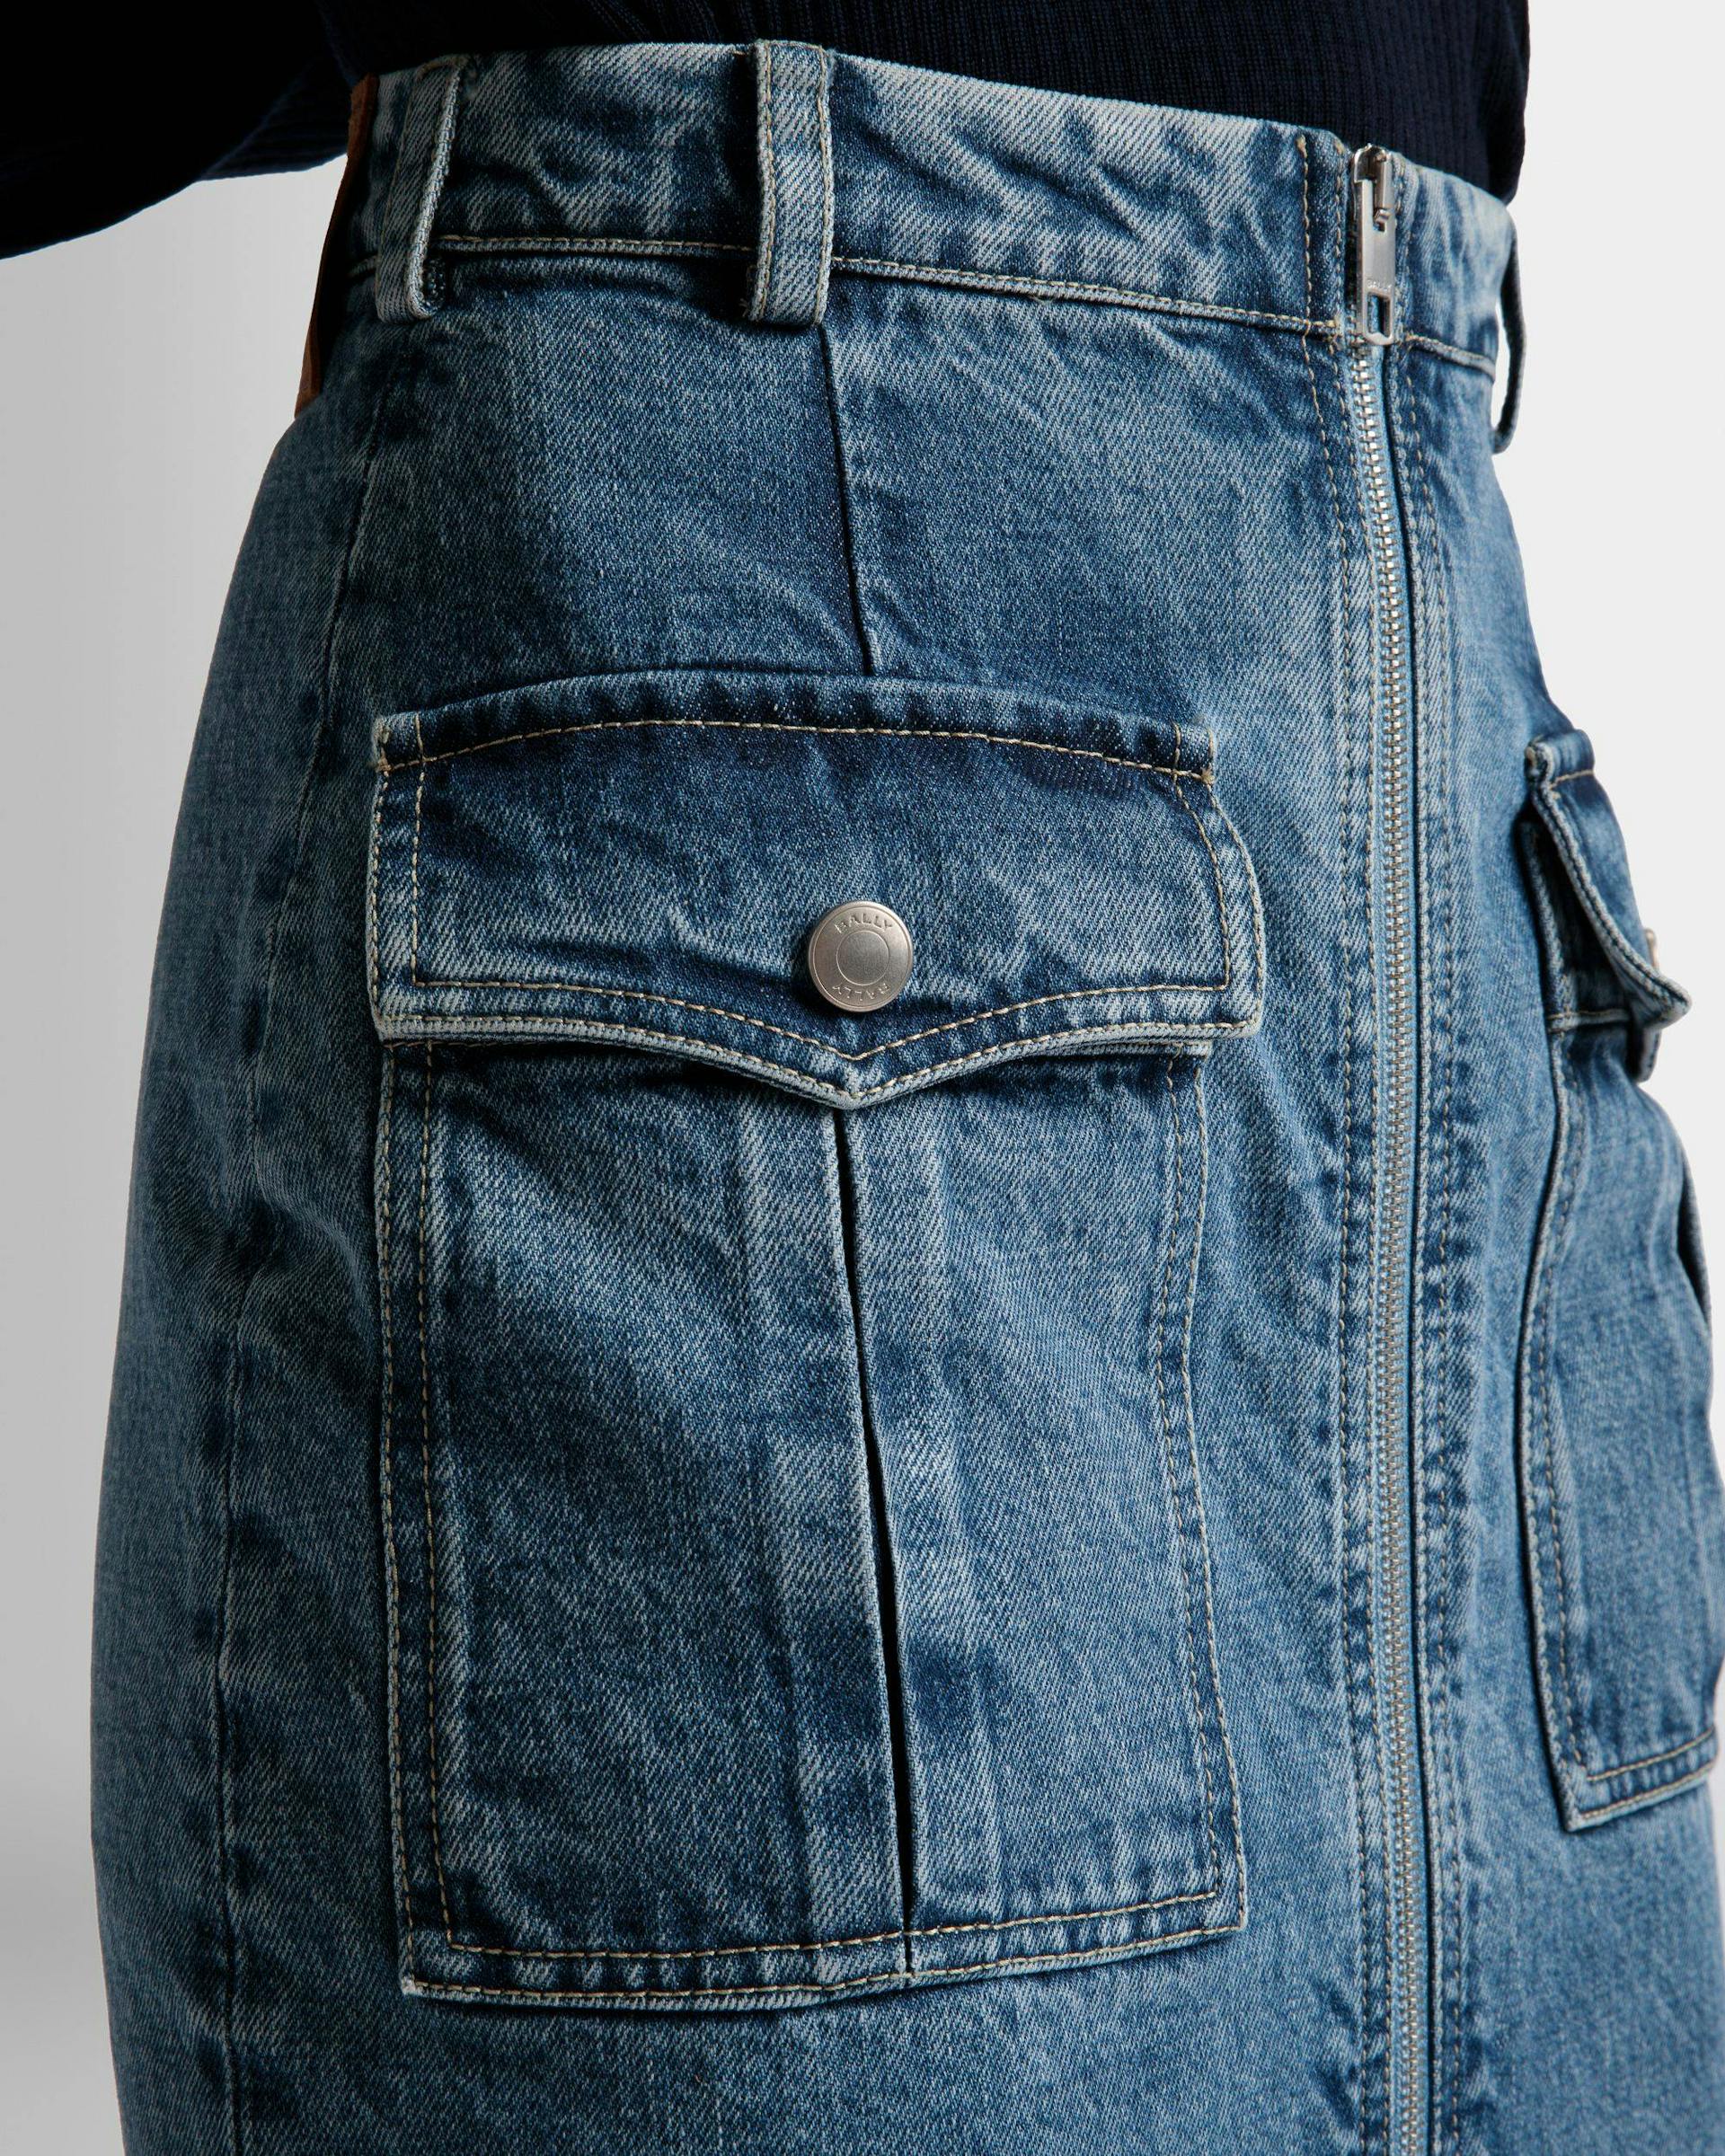 Knee Length Skirt In Light Blue Denim - Women's - Bally - 04